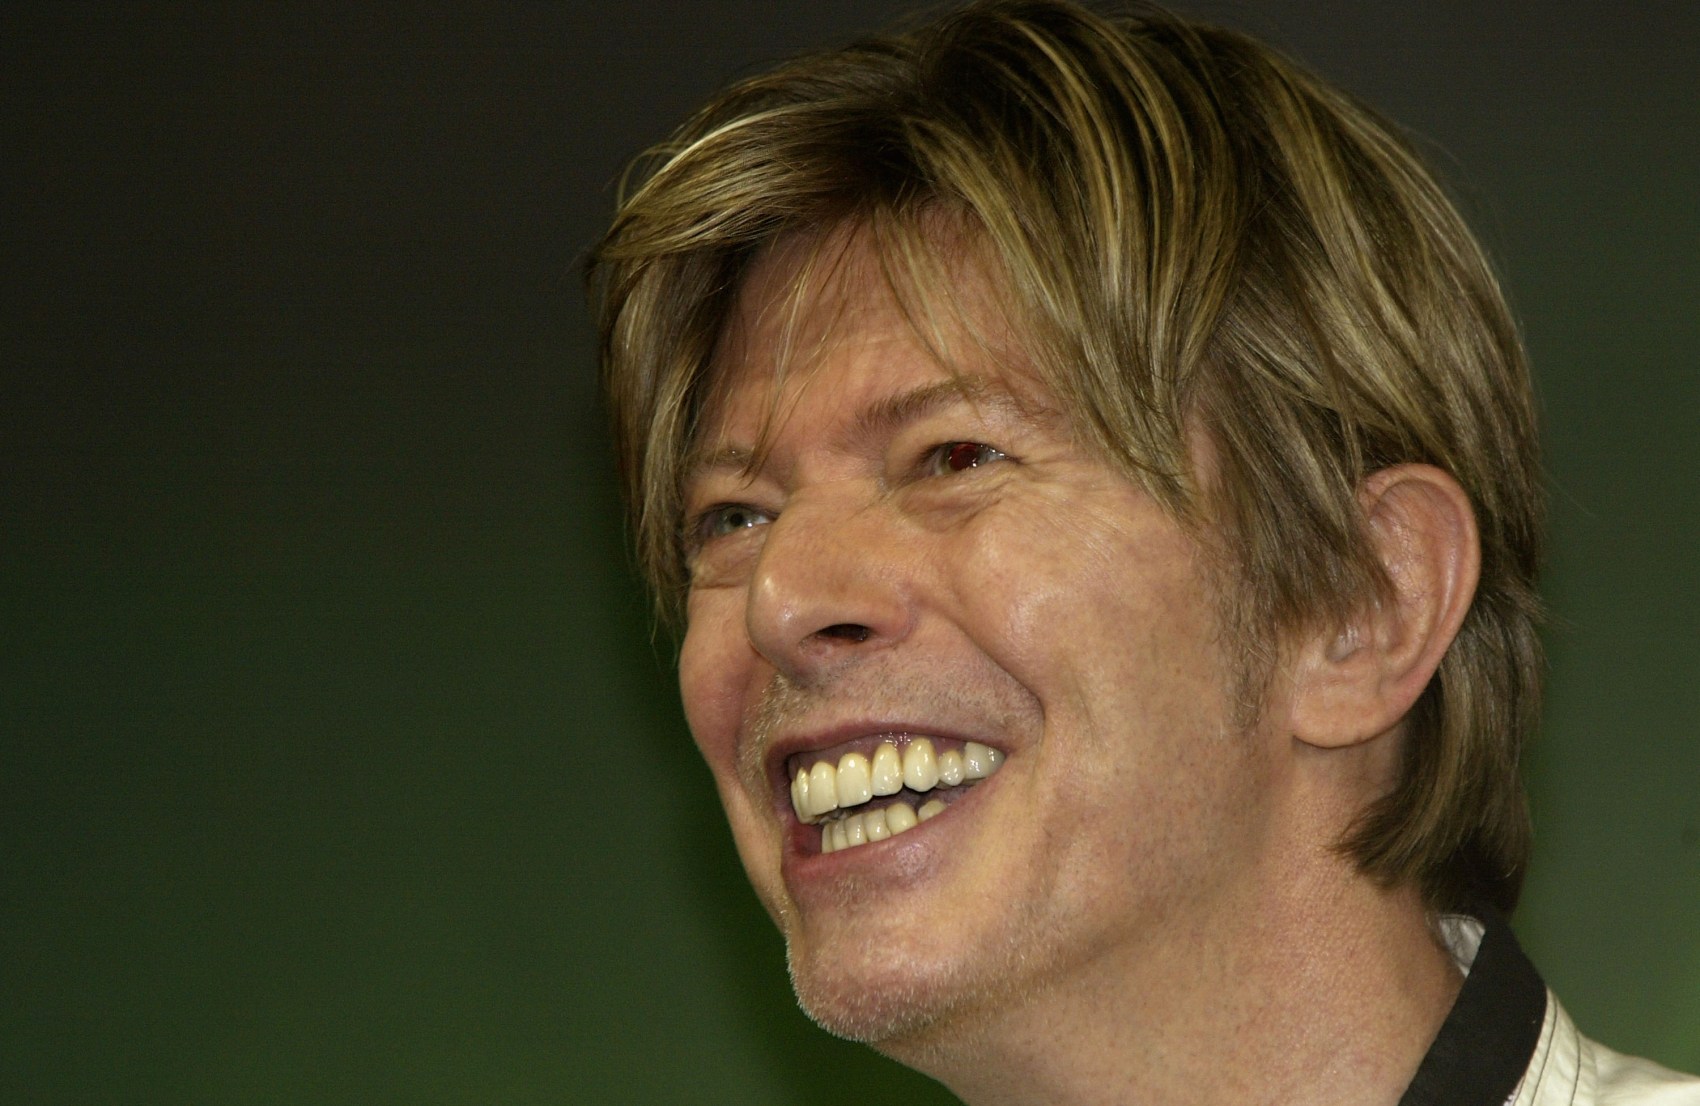 Singer David Bowie